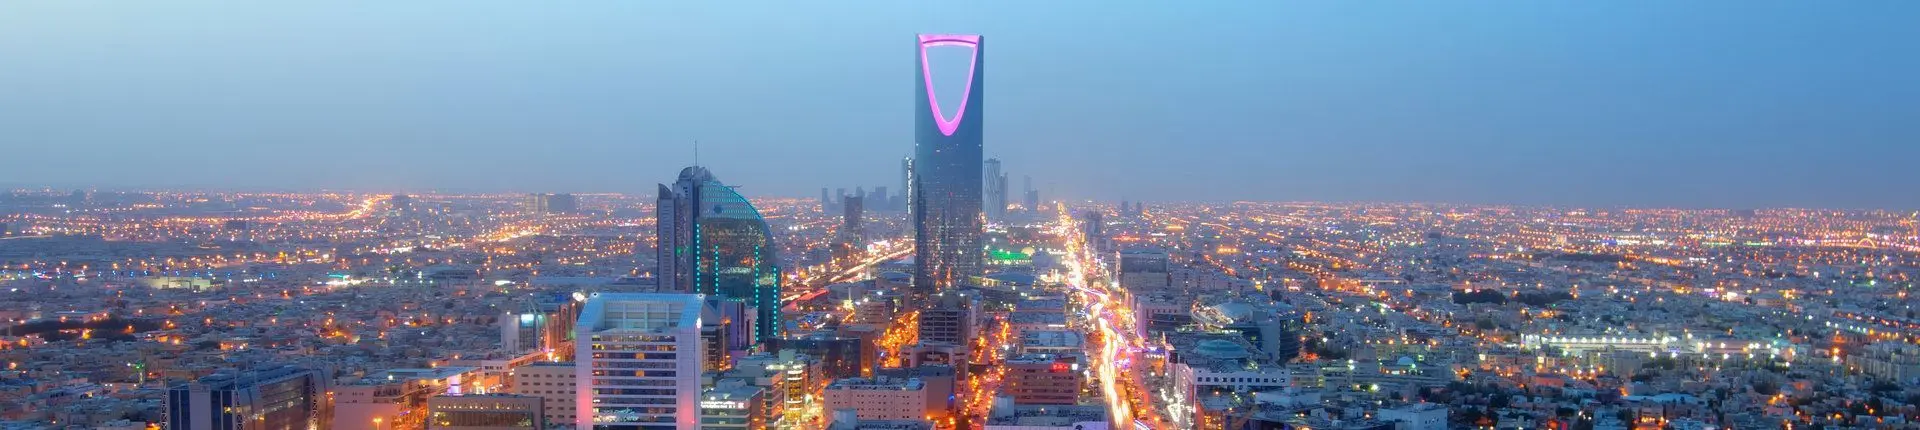 أماكن سياحية في مدينة الرياض